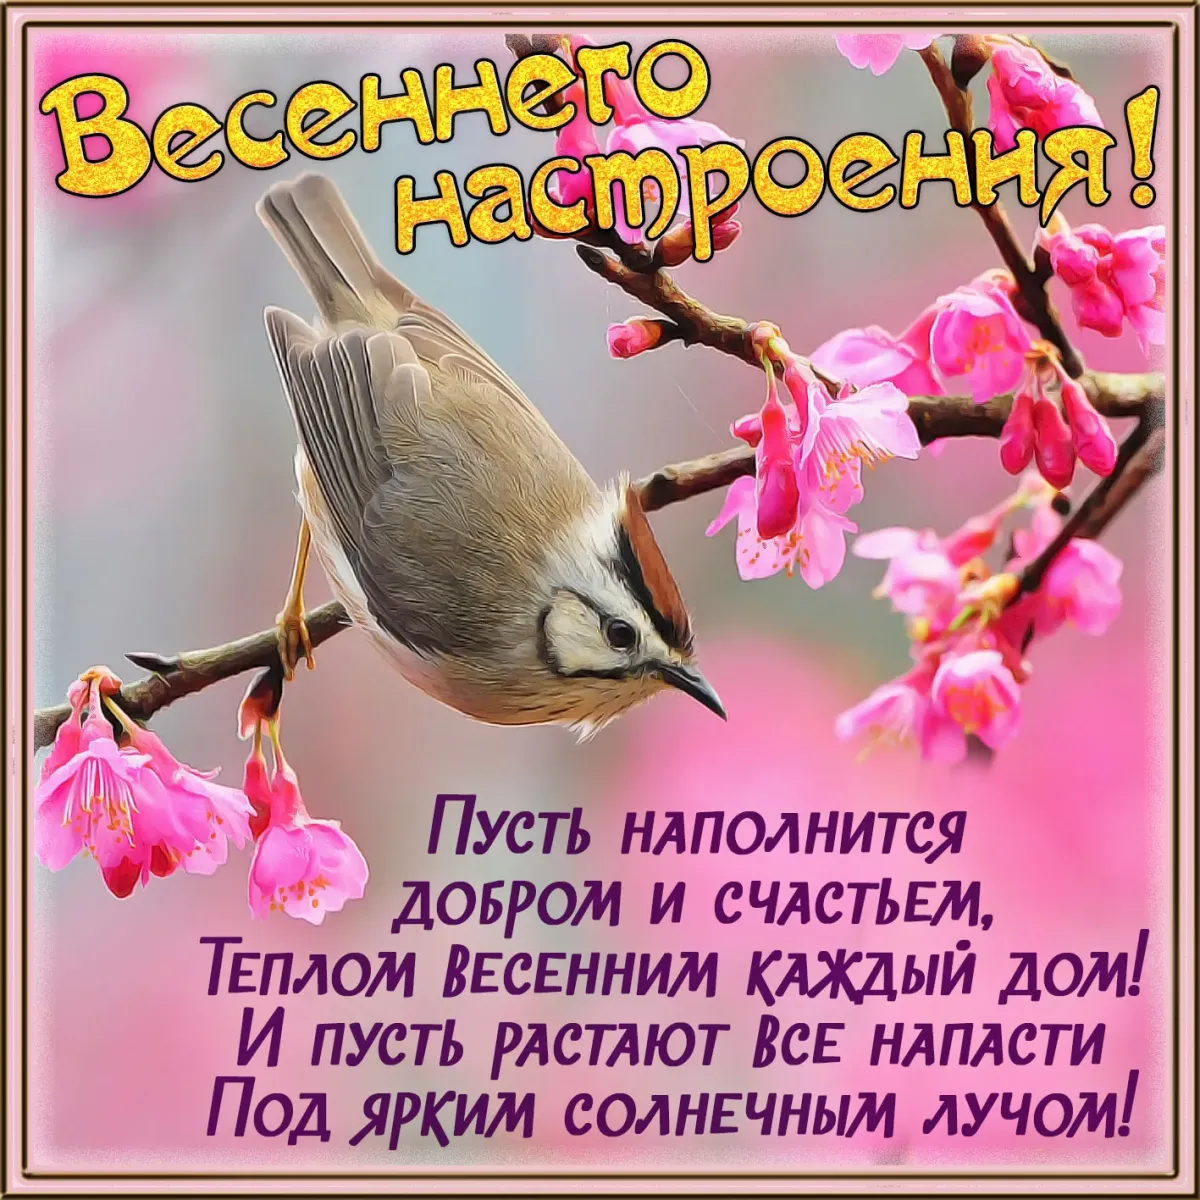 Пожелание доброго весеннего утра друзьям. Поздравление с добрым весенним утром. Весенние пожелания. Пожелания с добрым весенним утром. Поздравления с добрым утром весны.